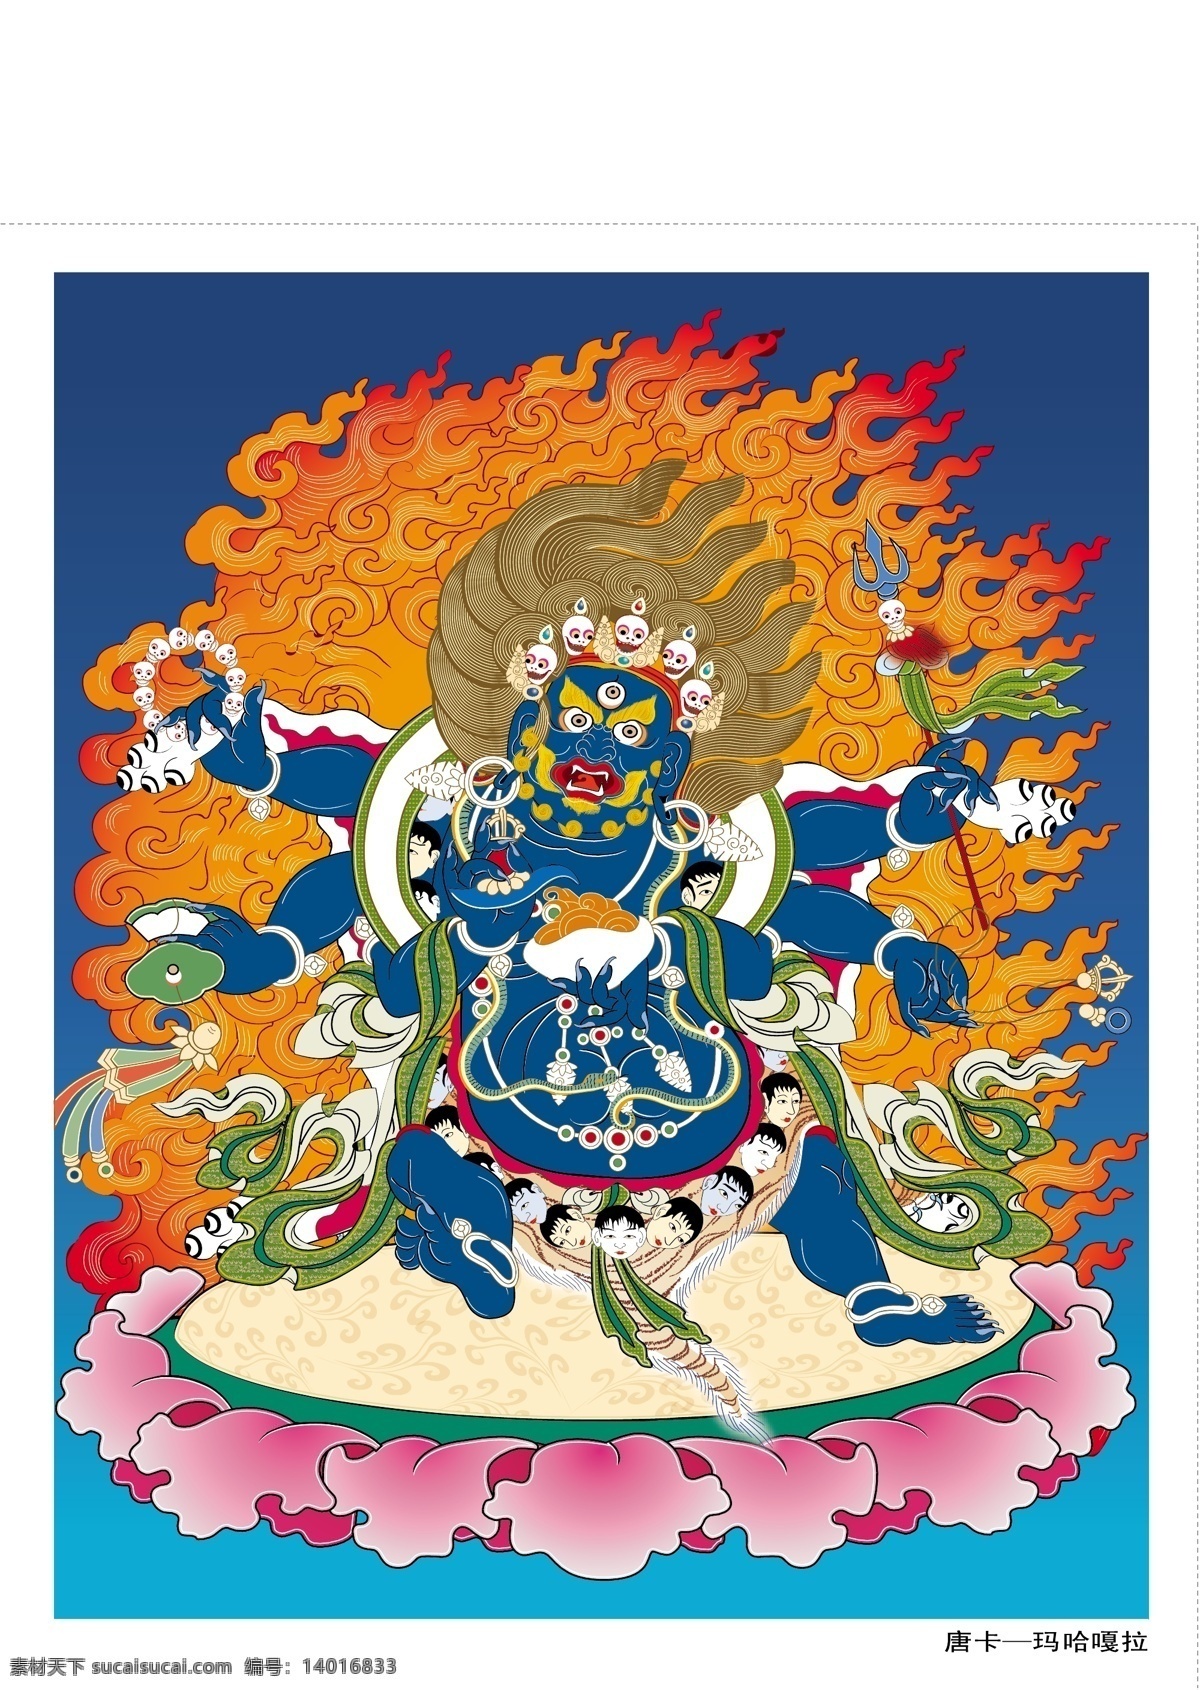 藏传佛教 唐卡 玛哈嘎拉 唐卡15 文化艺术 宗教信仰 矢量图库